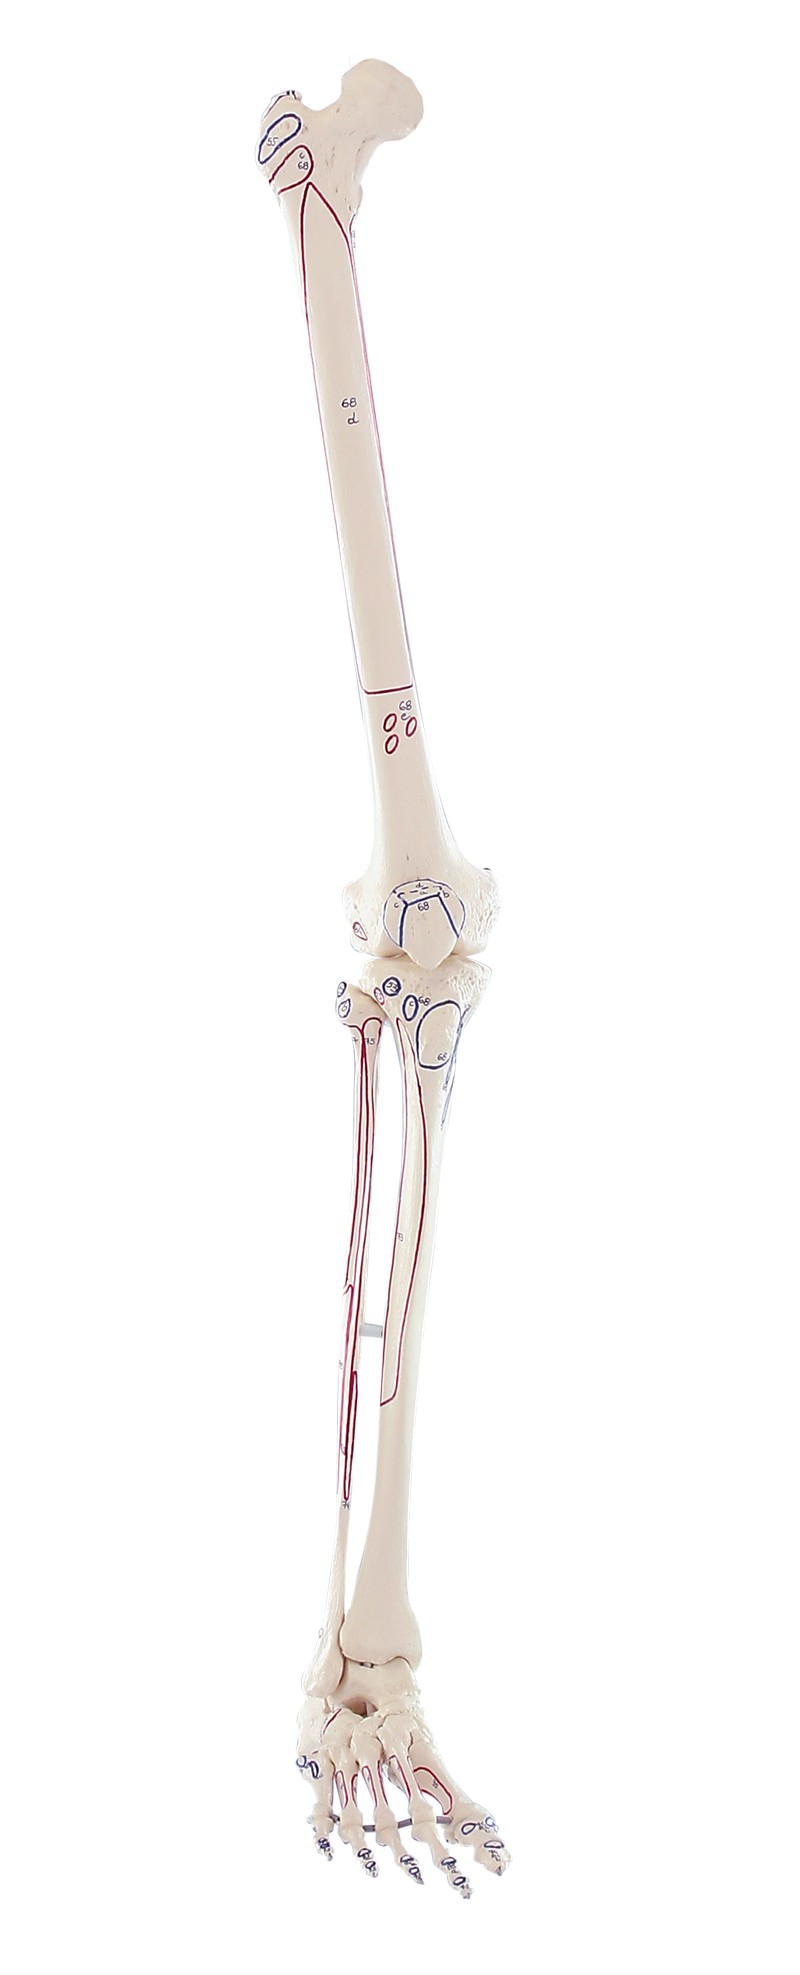 Model szkieletu kończyny dolnej z przyczepami mięśni - Image no.: 1